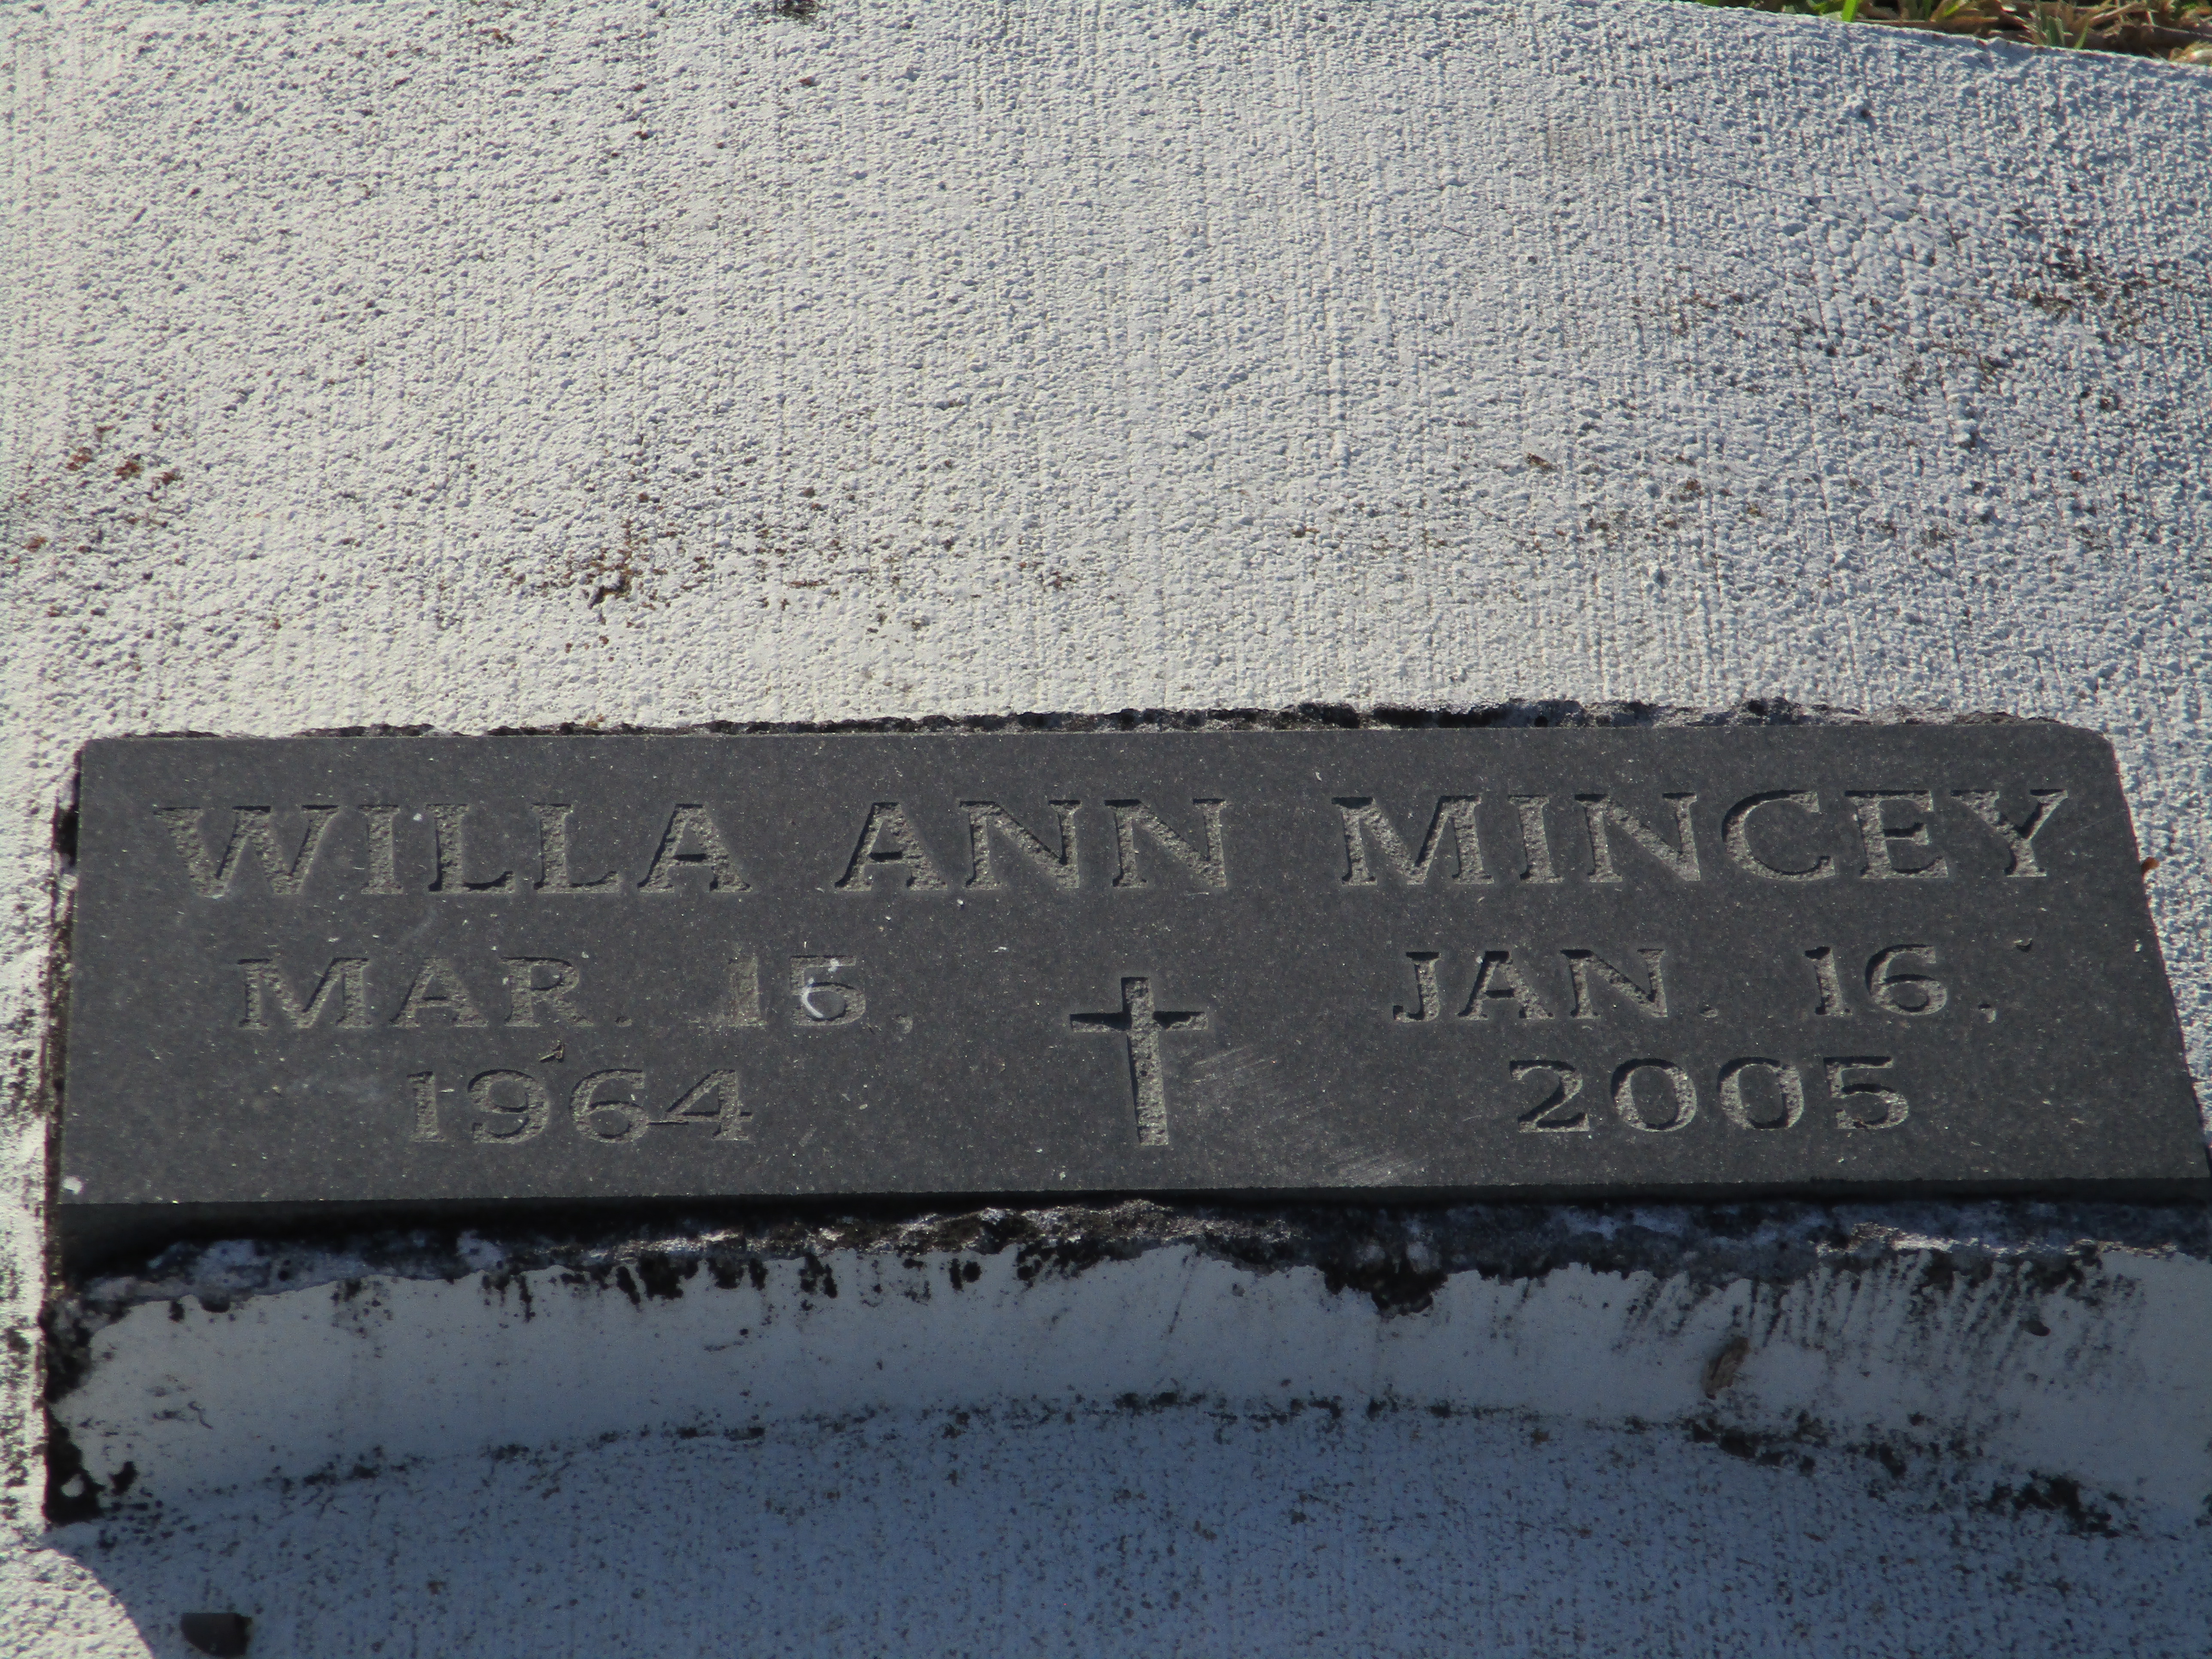 Willa Ann Mincey